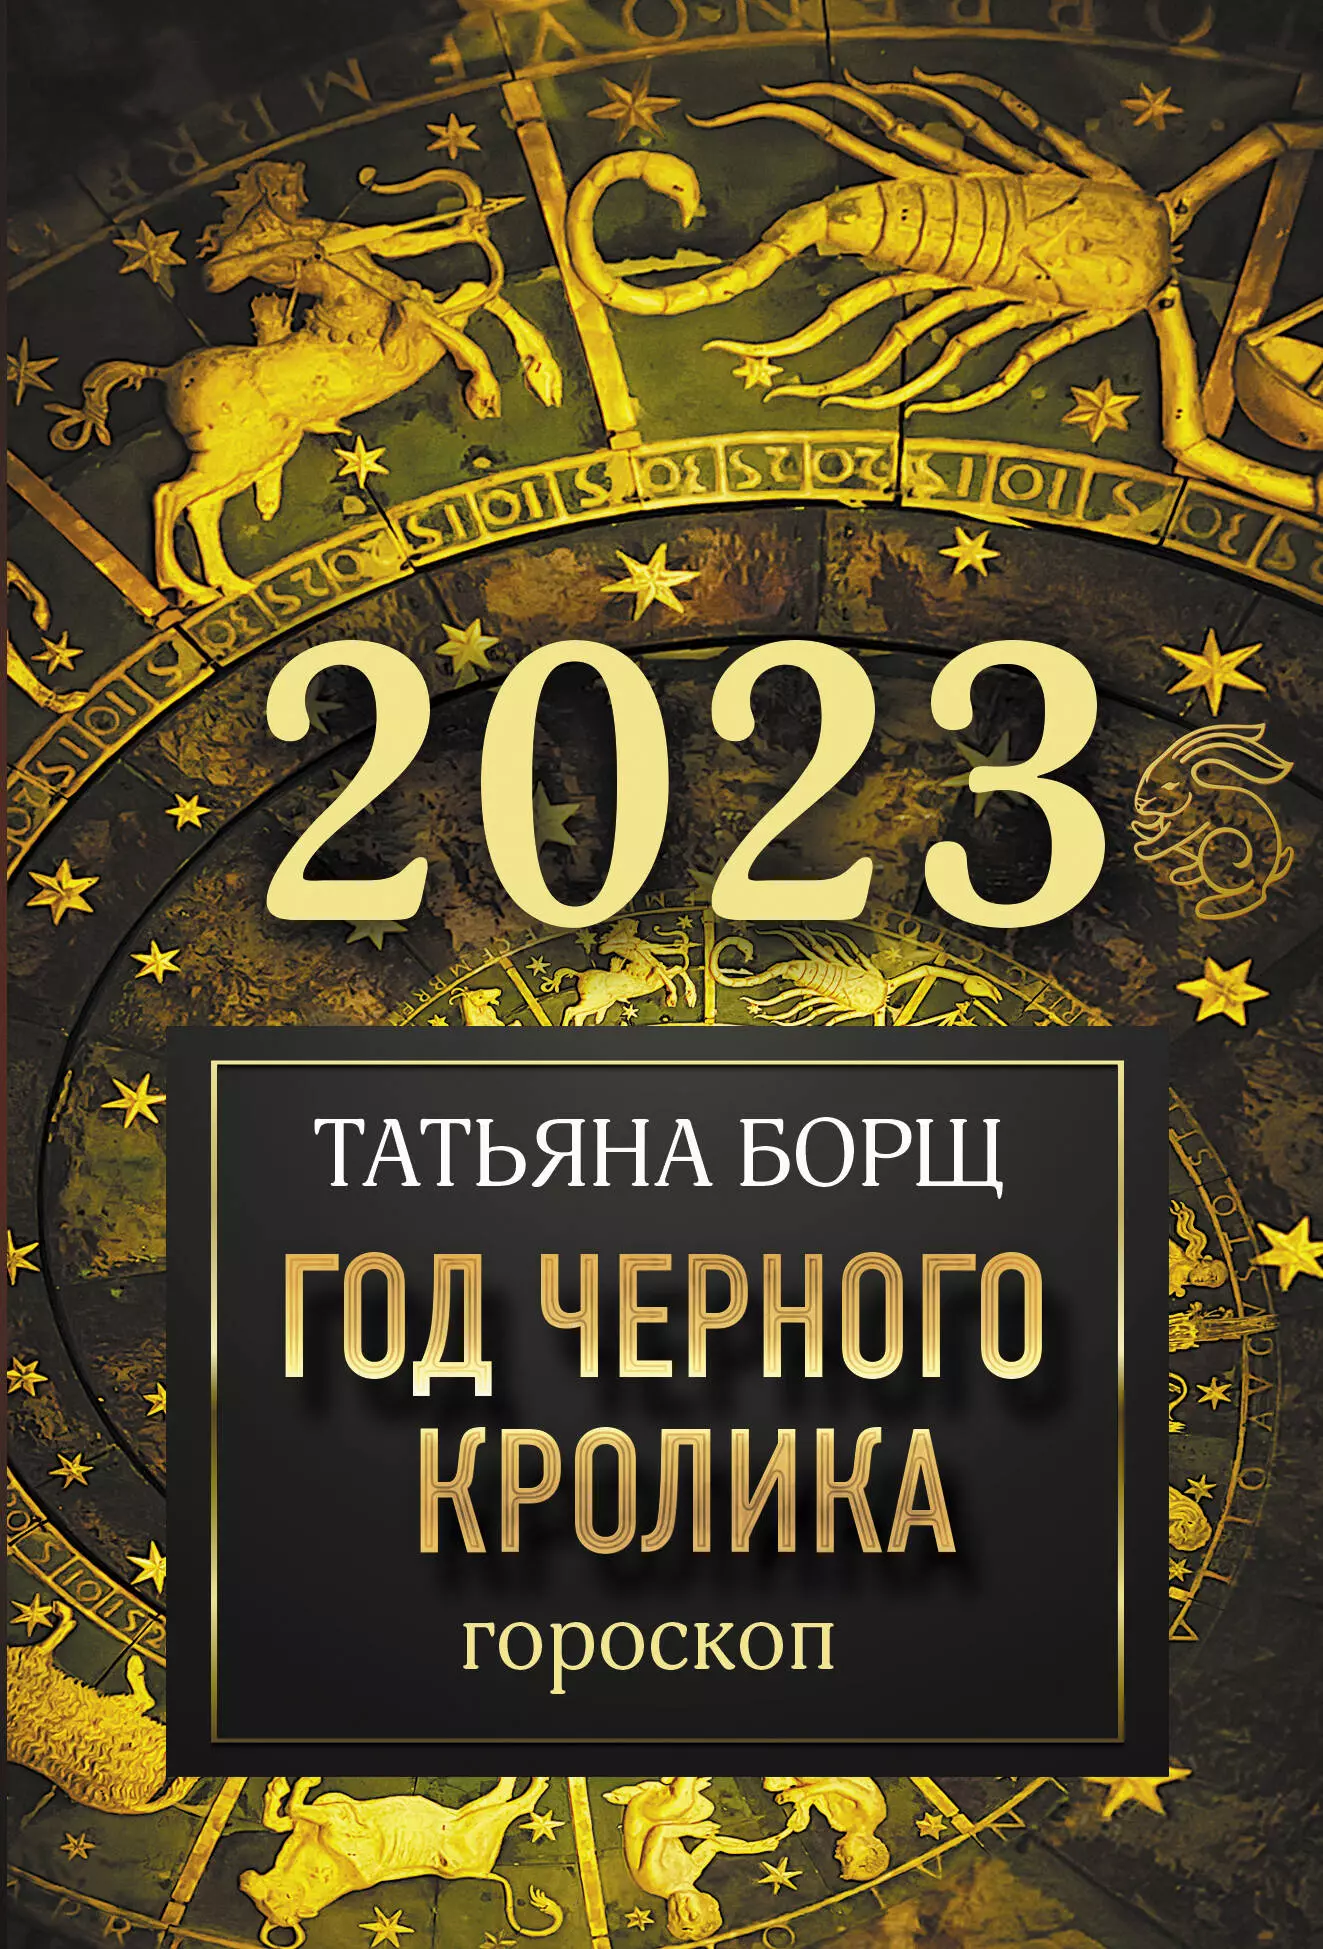 Борщ Татьяна Юрьевна - Гороскоп на 2023: год Черного Кролика